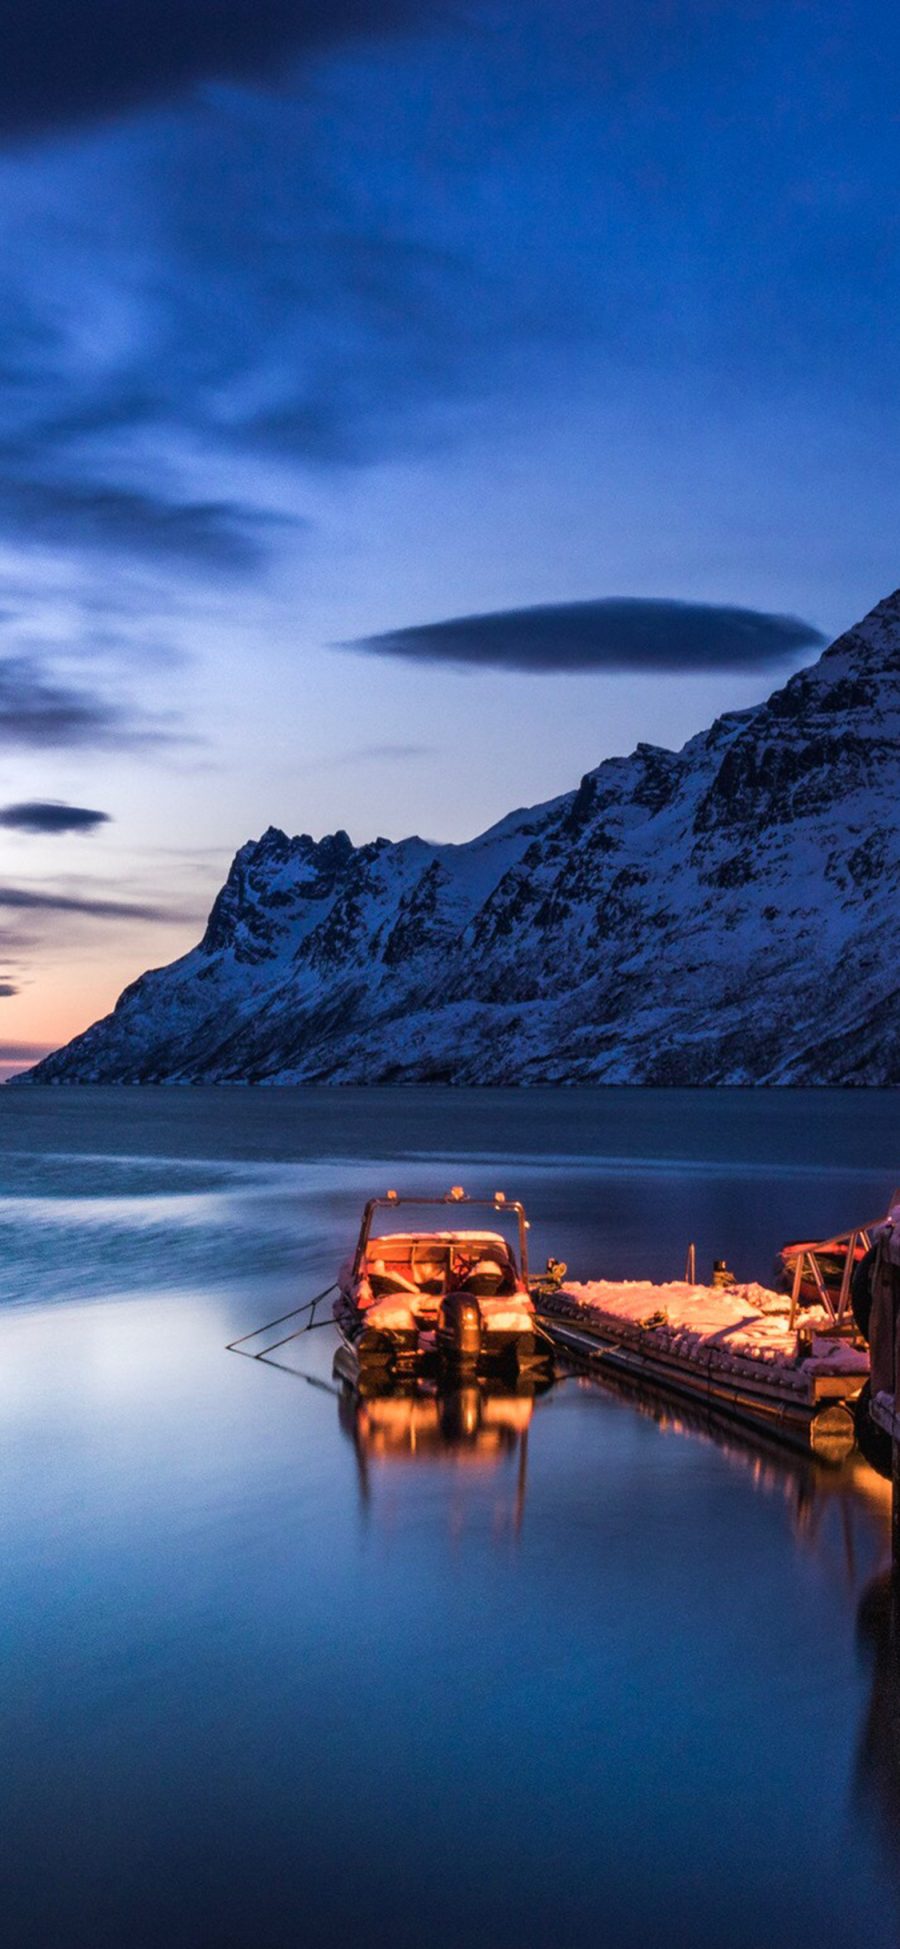 [2436×1125]自然美景 天空 山峰湖泊 小船 苹果手机壁纸图片